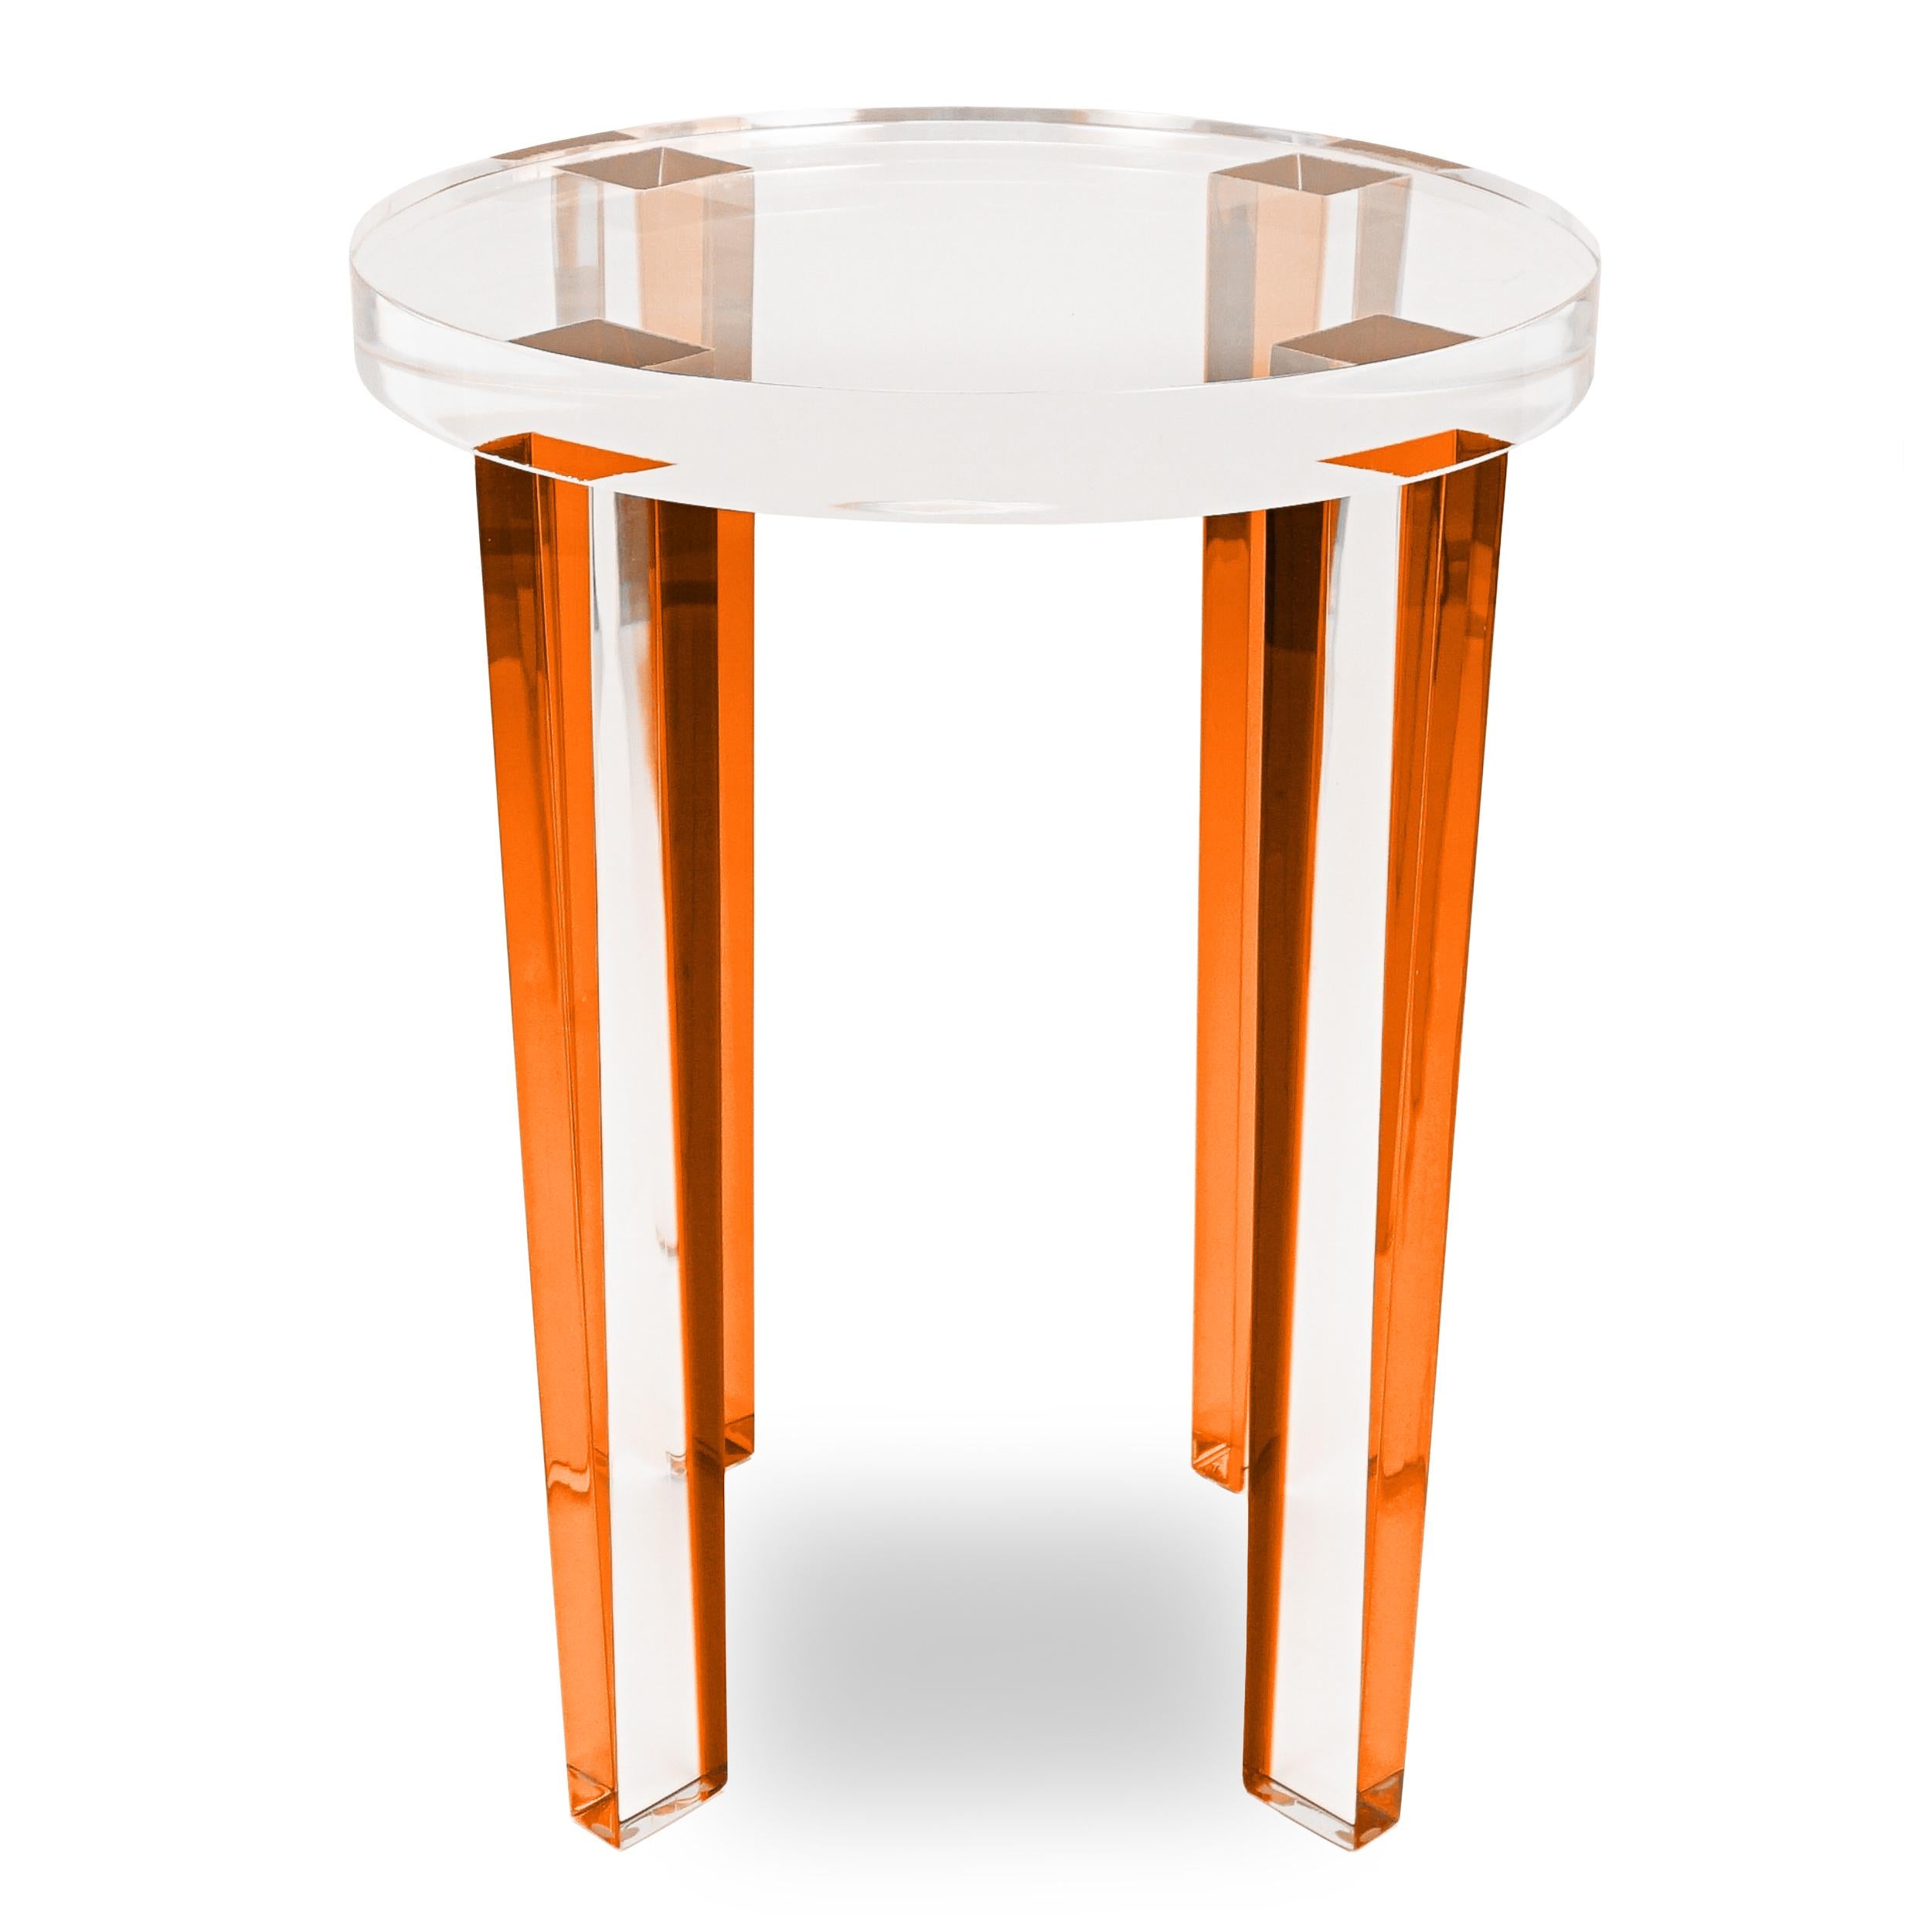 Cette table d'appoint ronde en lucite est composée de pieds en lucite de couleur orange et d'un plateau en lucite transparent. Cette petite table d'appoint reflétera la lumière et créera un grand impact.

Ensemble : 15 